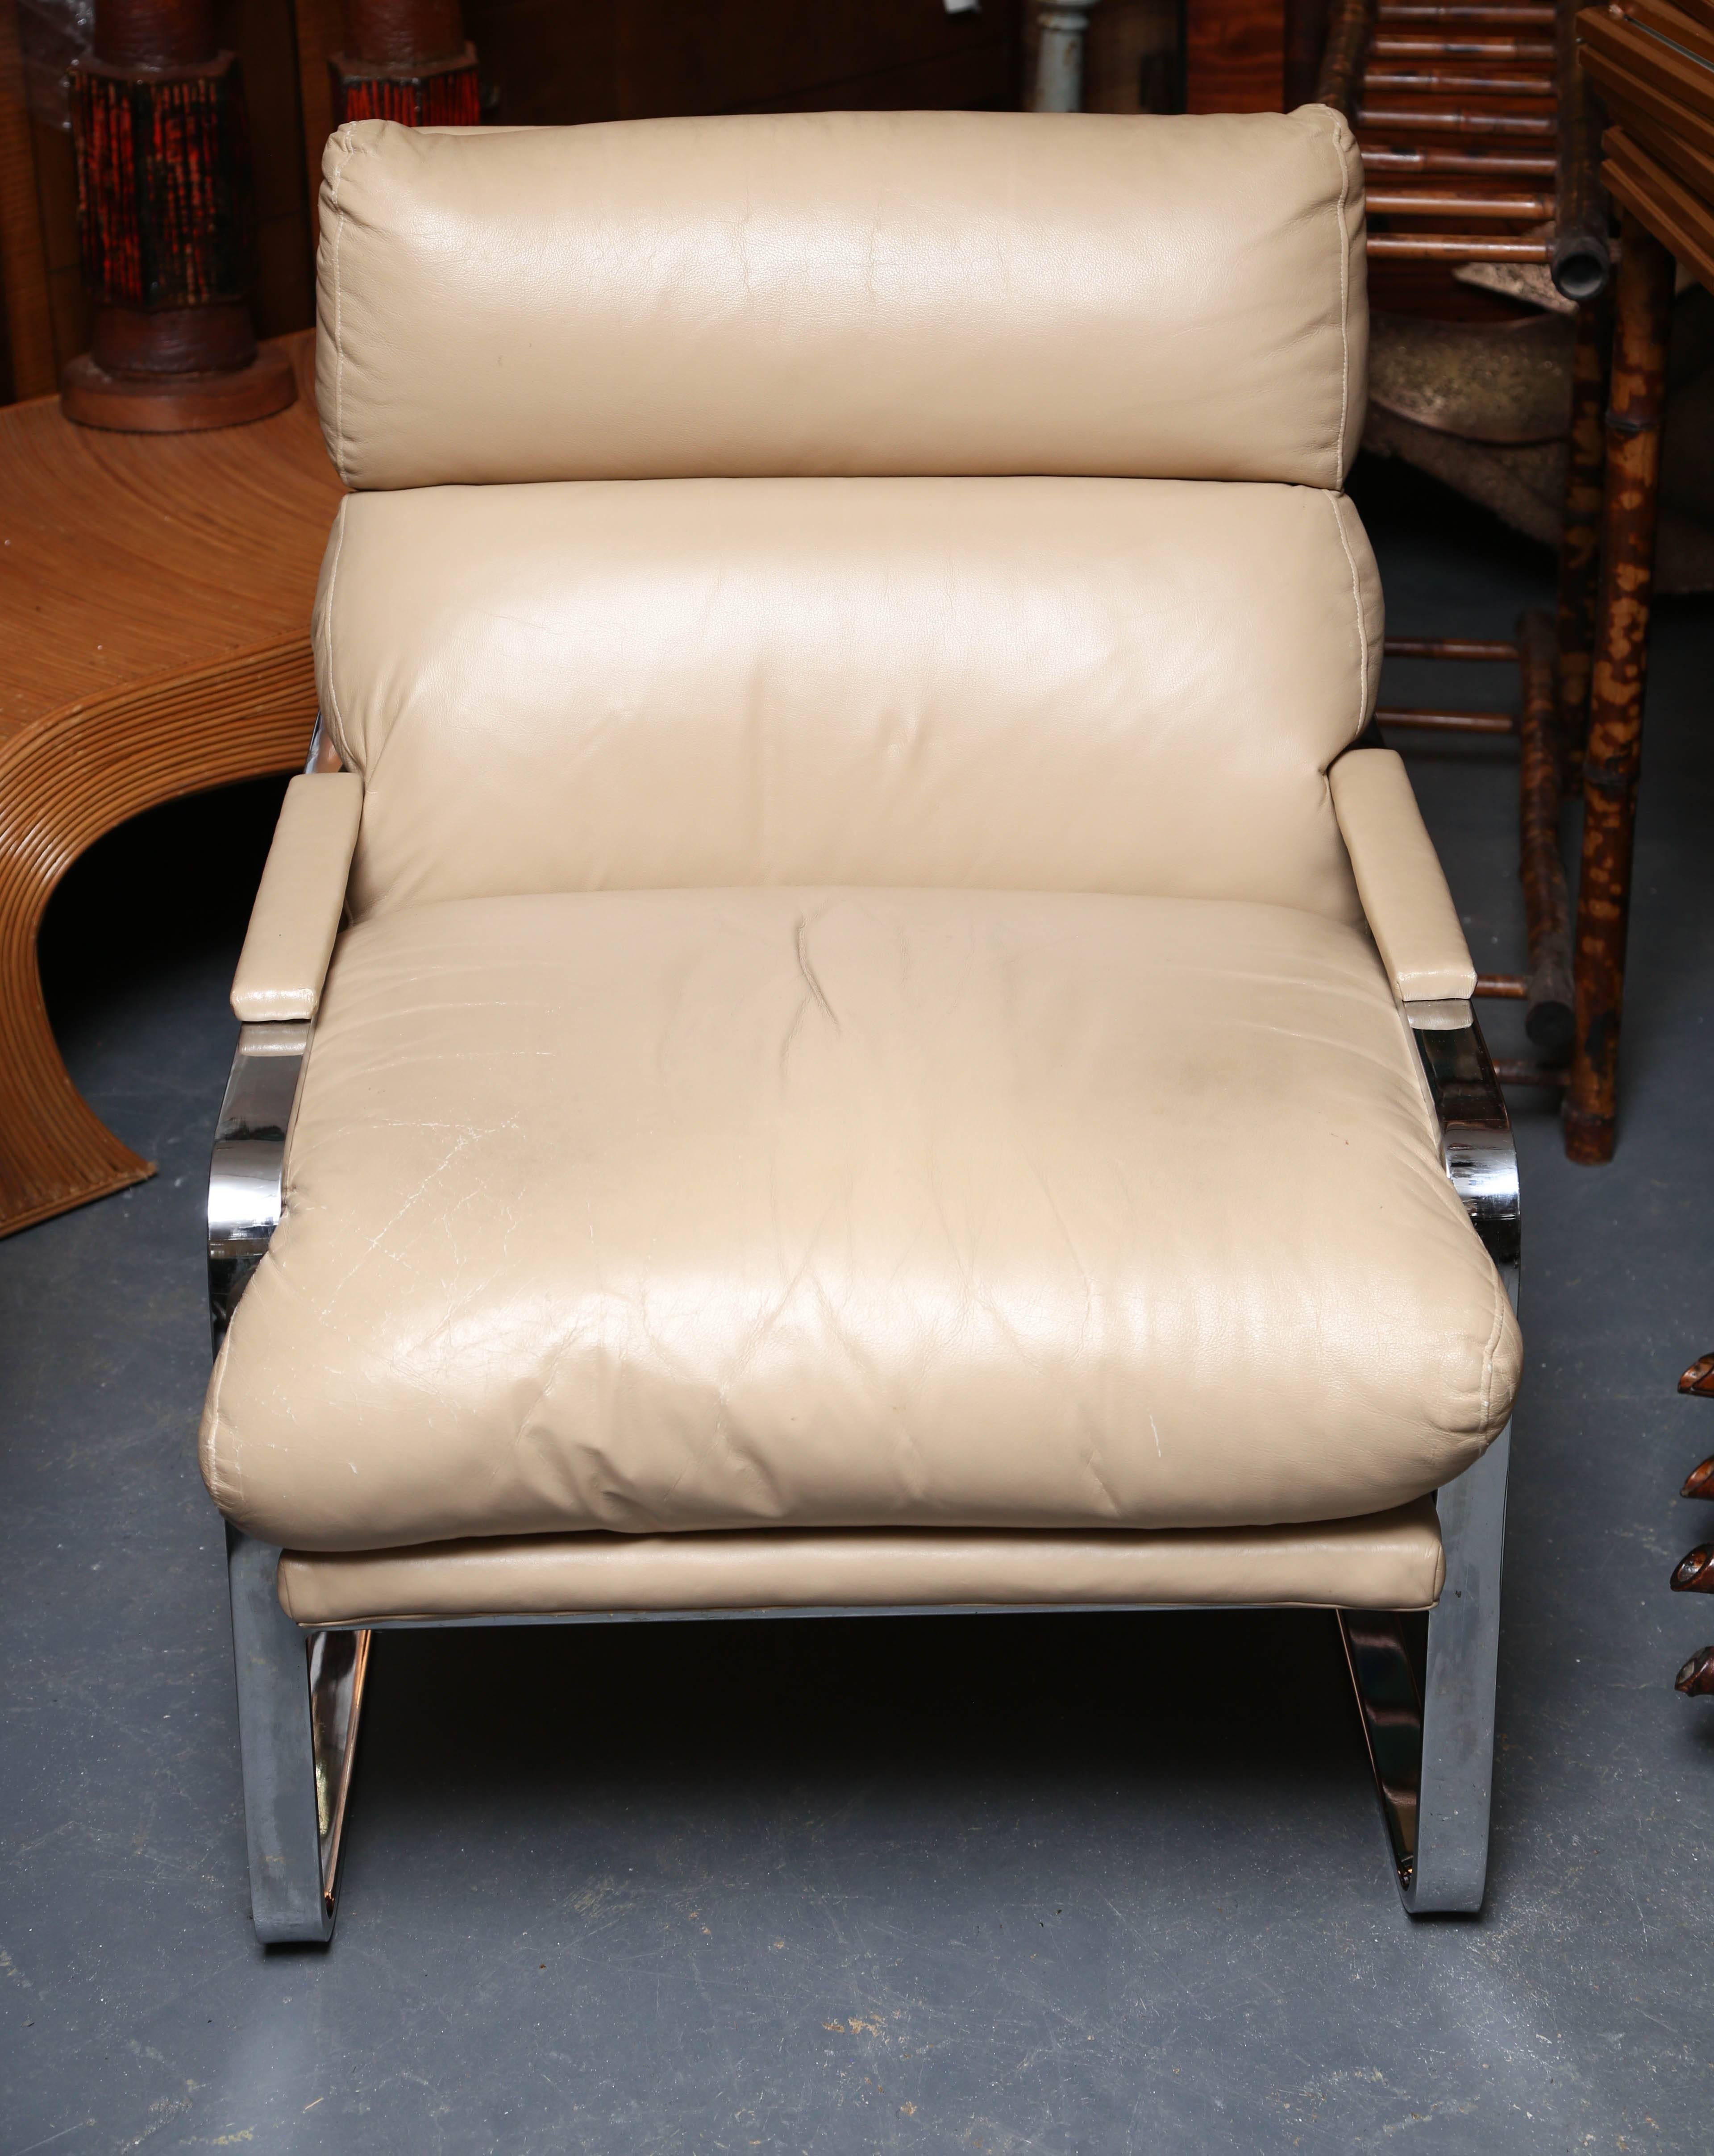 Plush creamy leather upholstery over a sleek chrome frame.